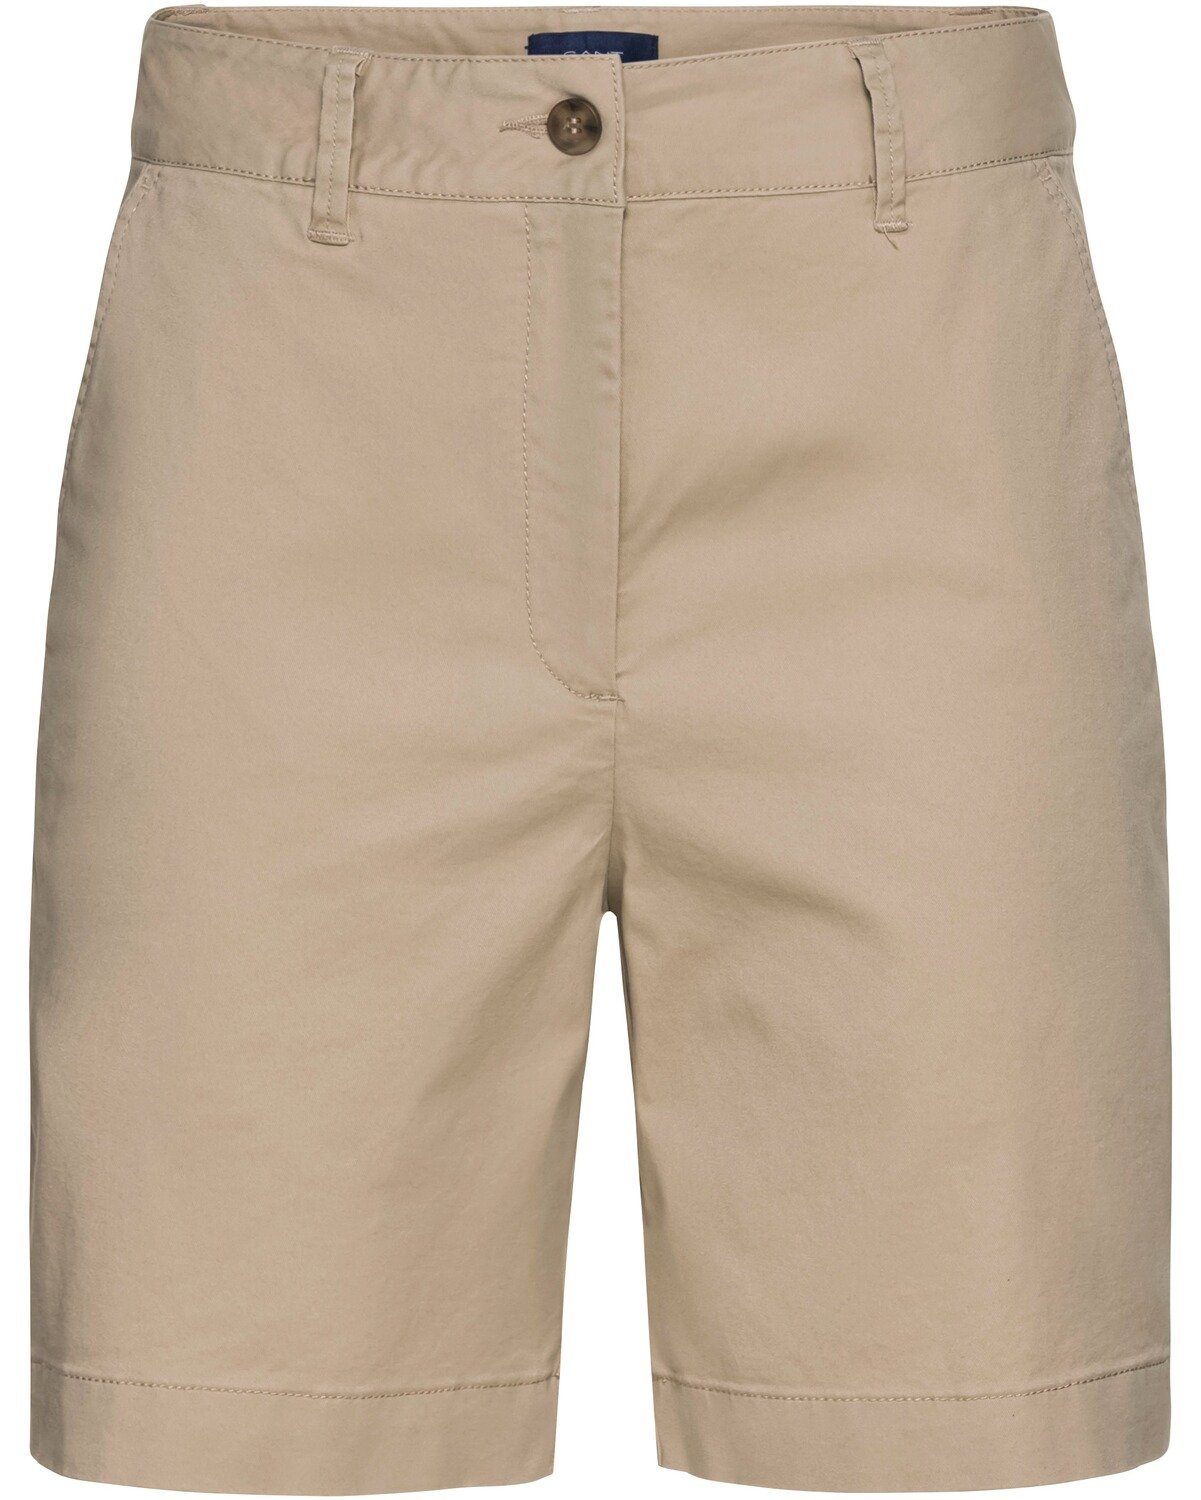 Chinoshorts Sand Gant Shorts